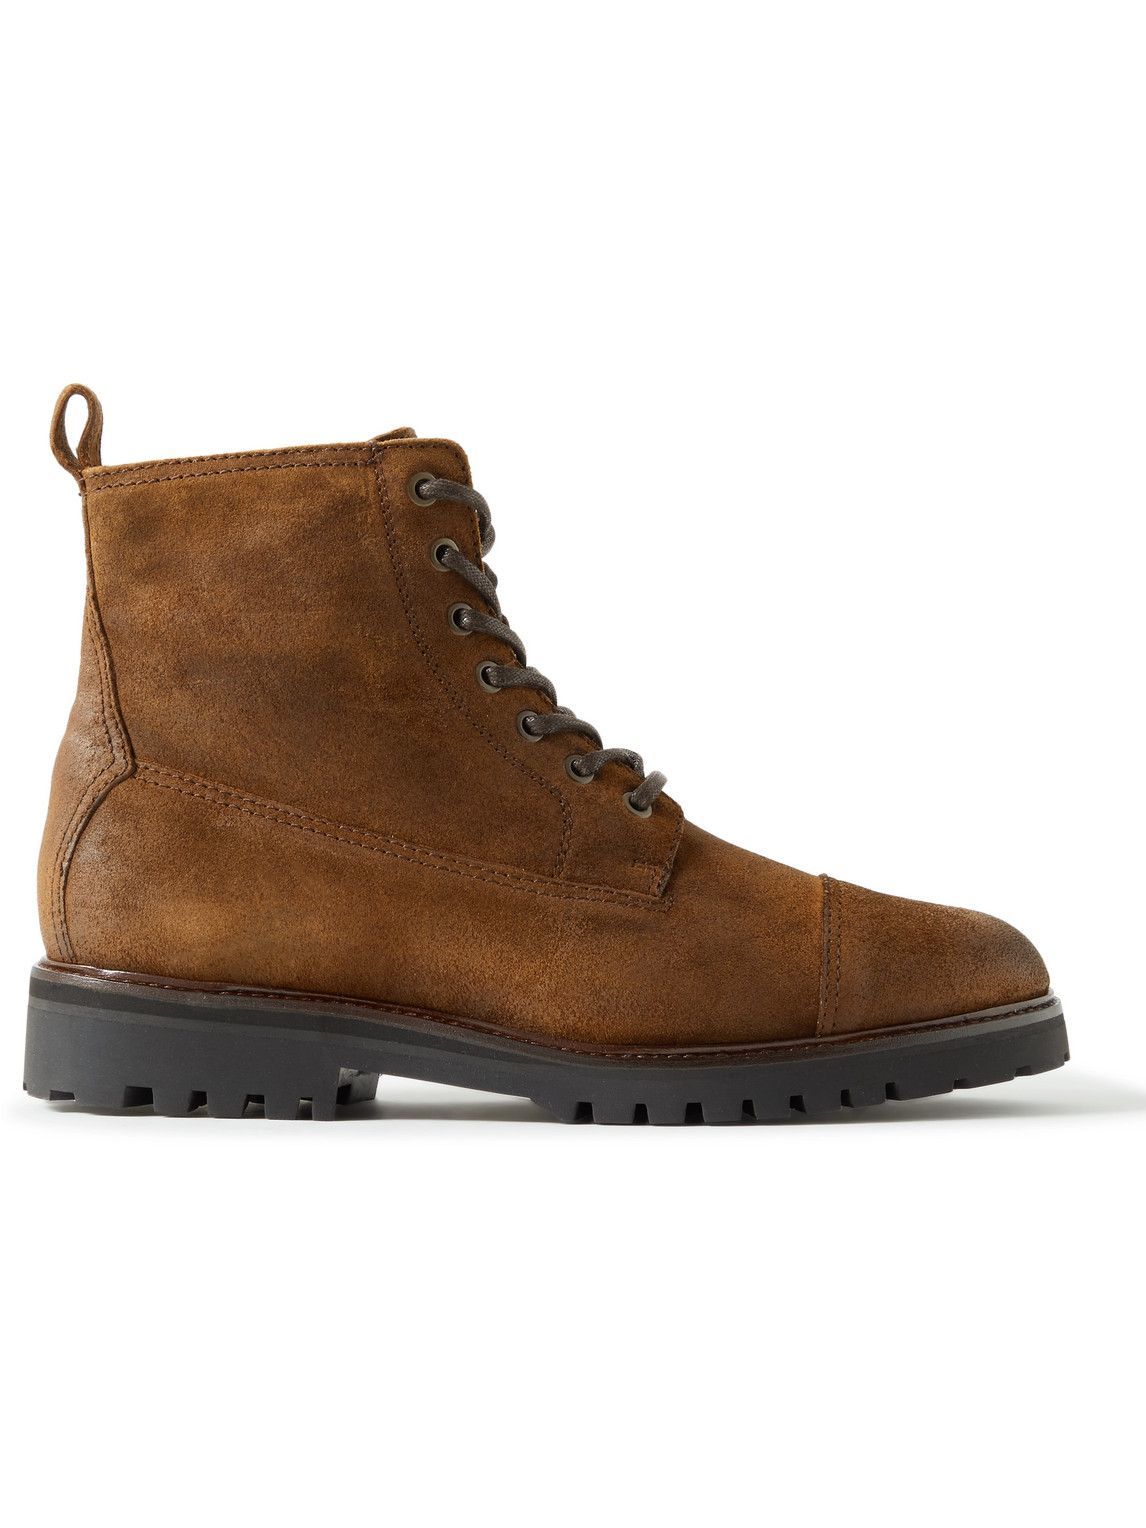 Belstaff - Alperton Full-Grain Leather Boots - Brown Belstaff